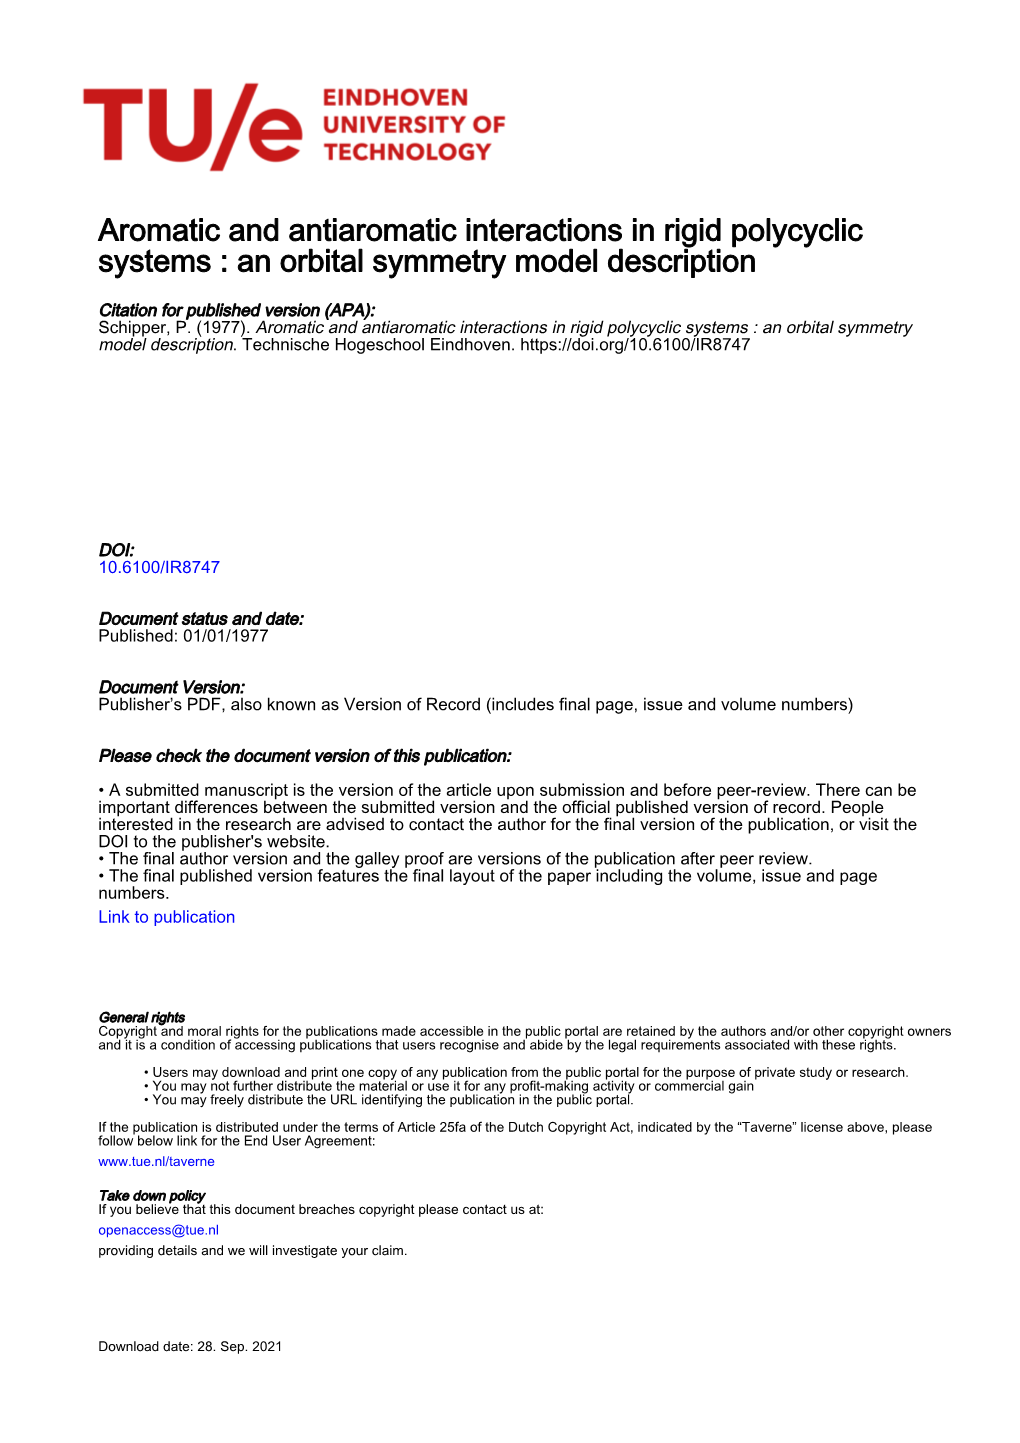 An Orbital Symmetry Model Description